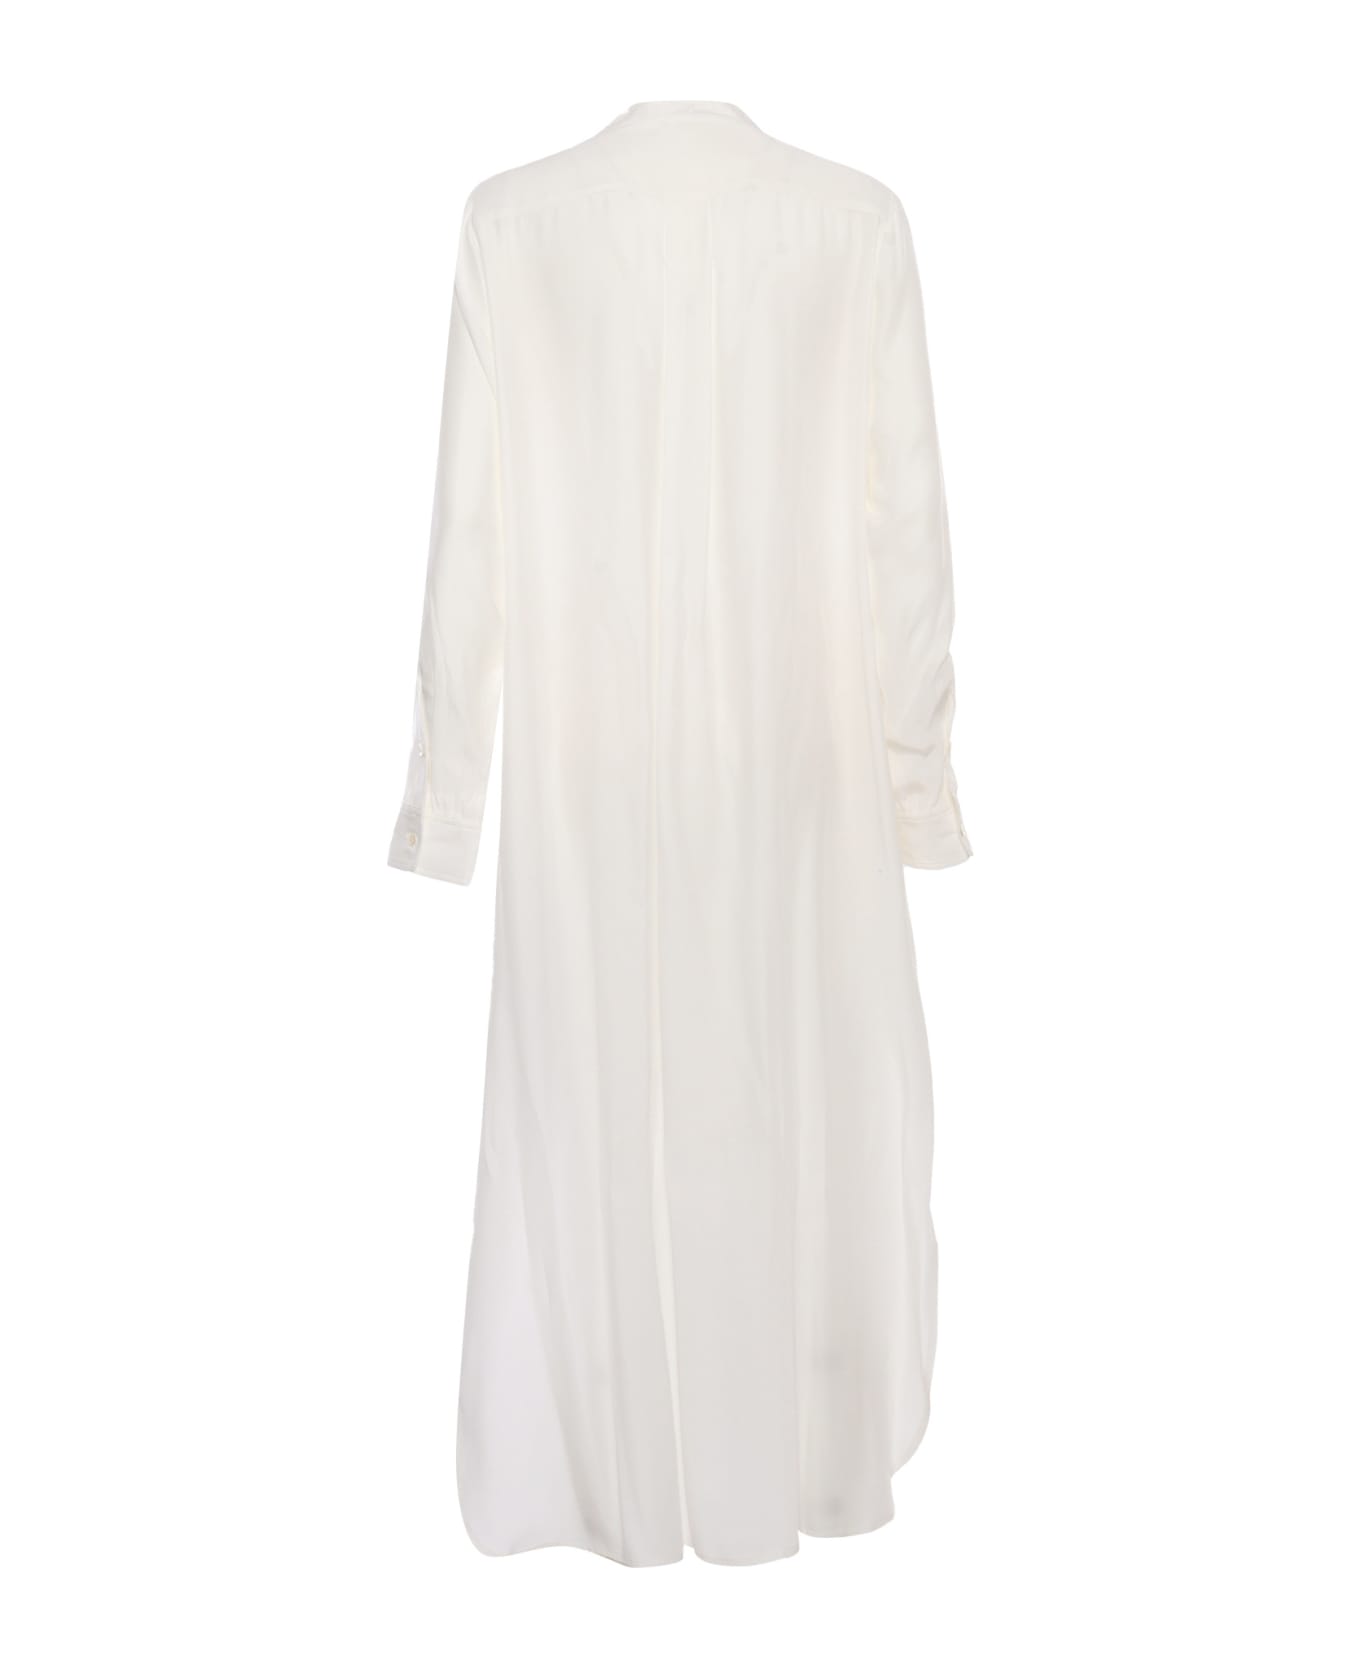 Parosh White Silk Shirt - WHITE ニットウェア